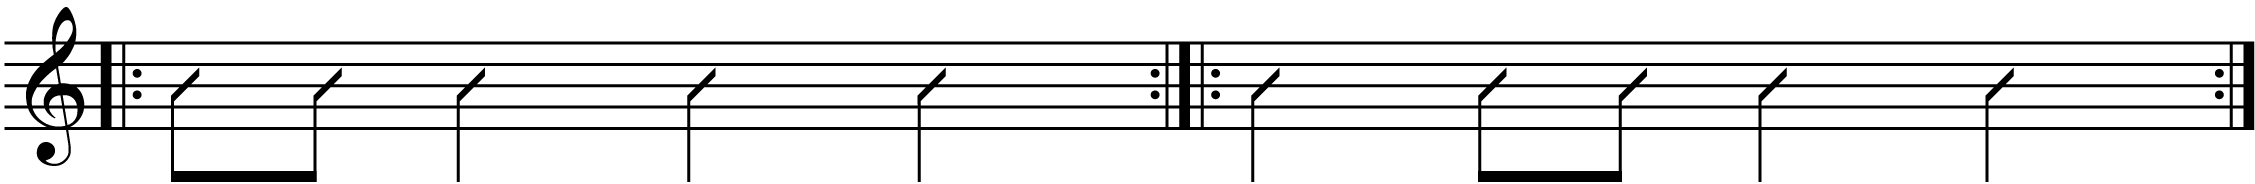 some syncopated rhythms.